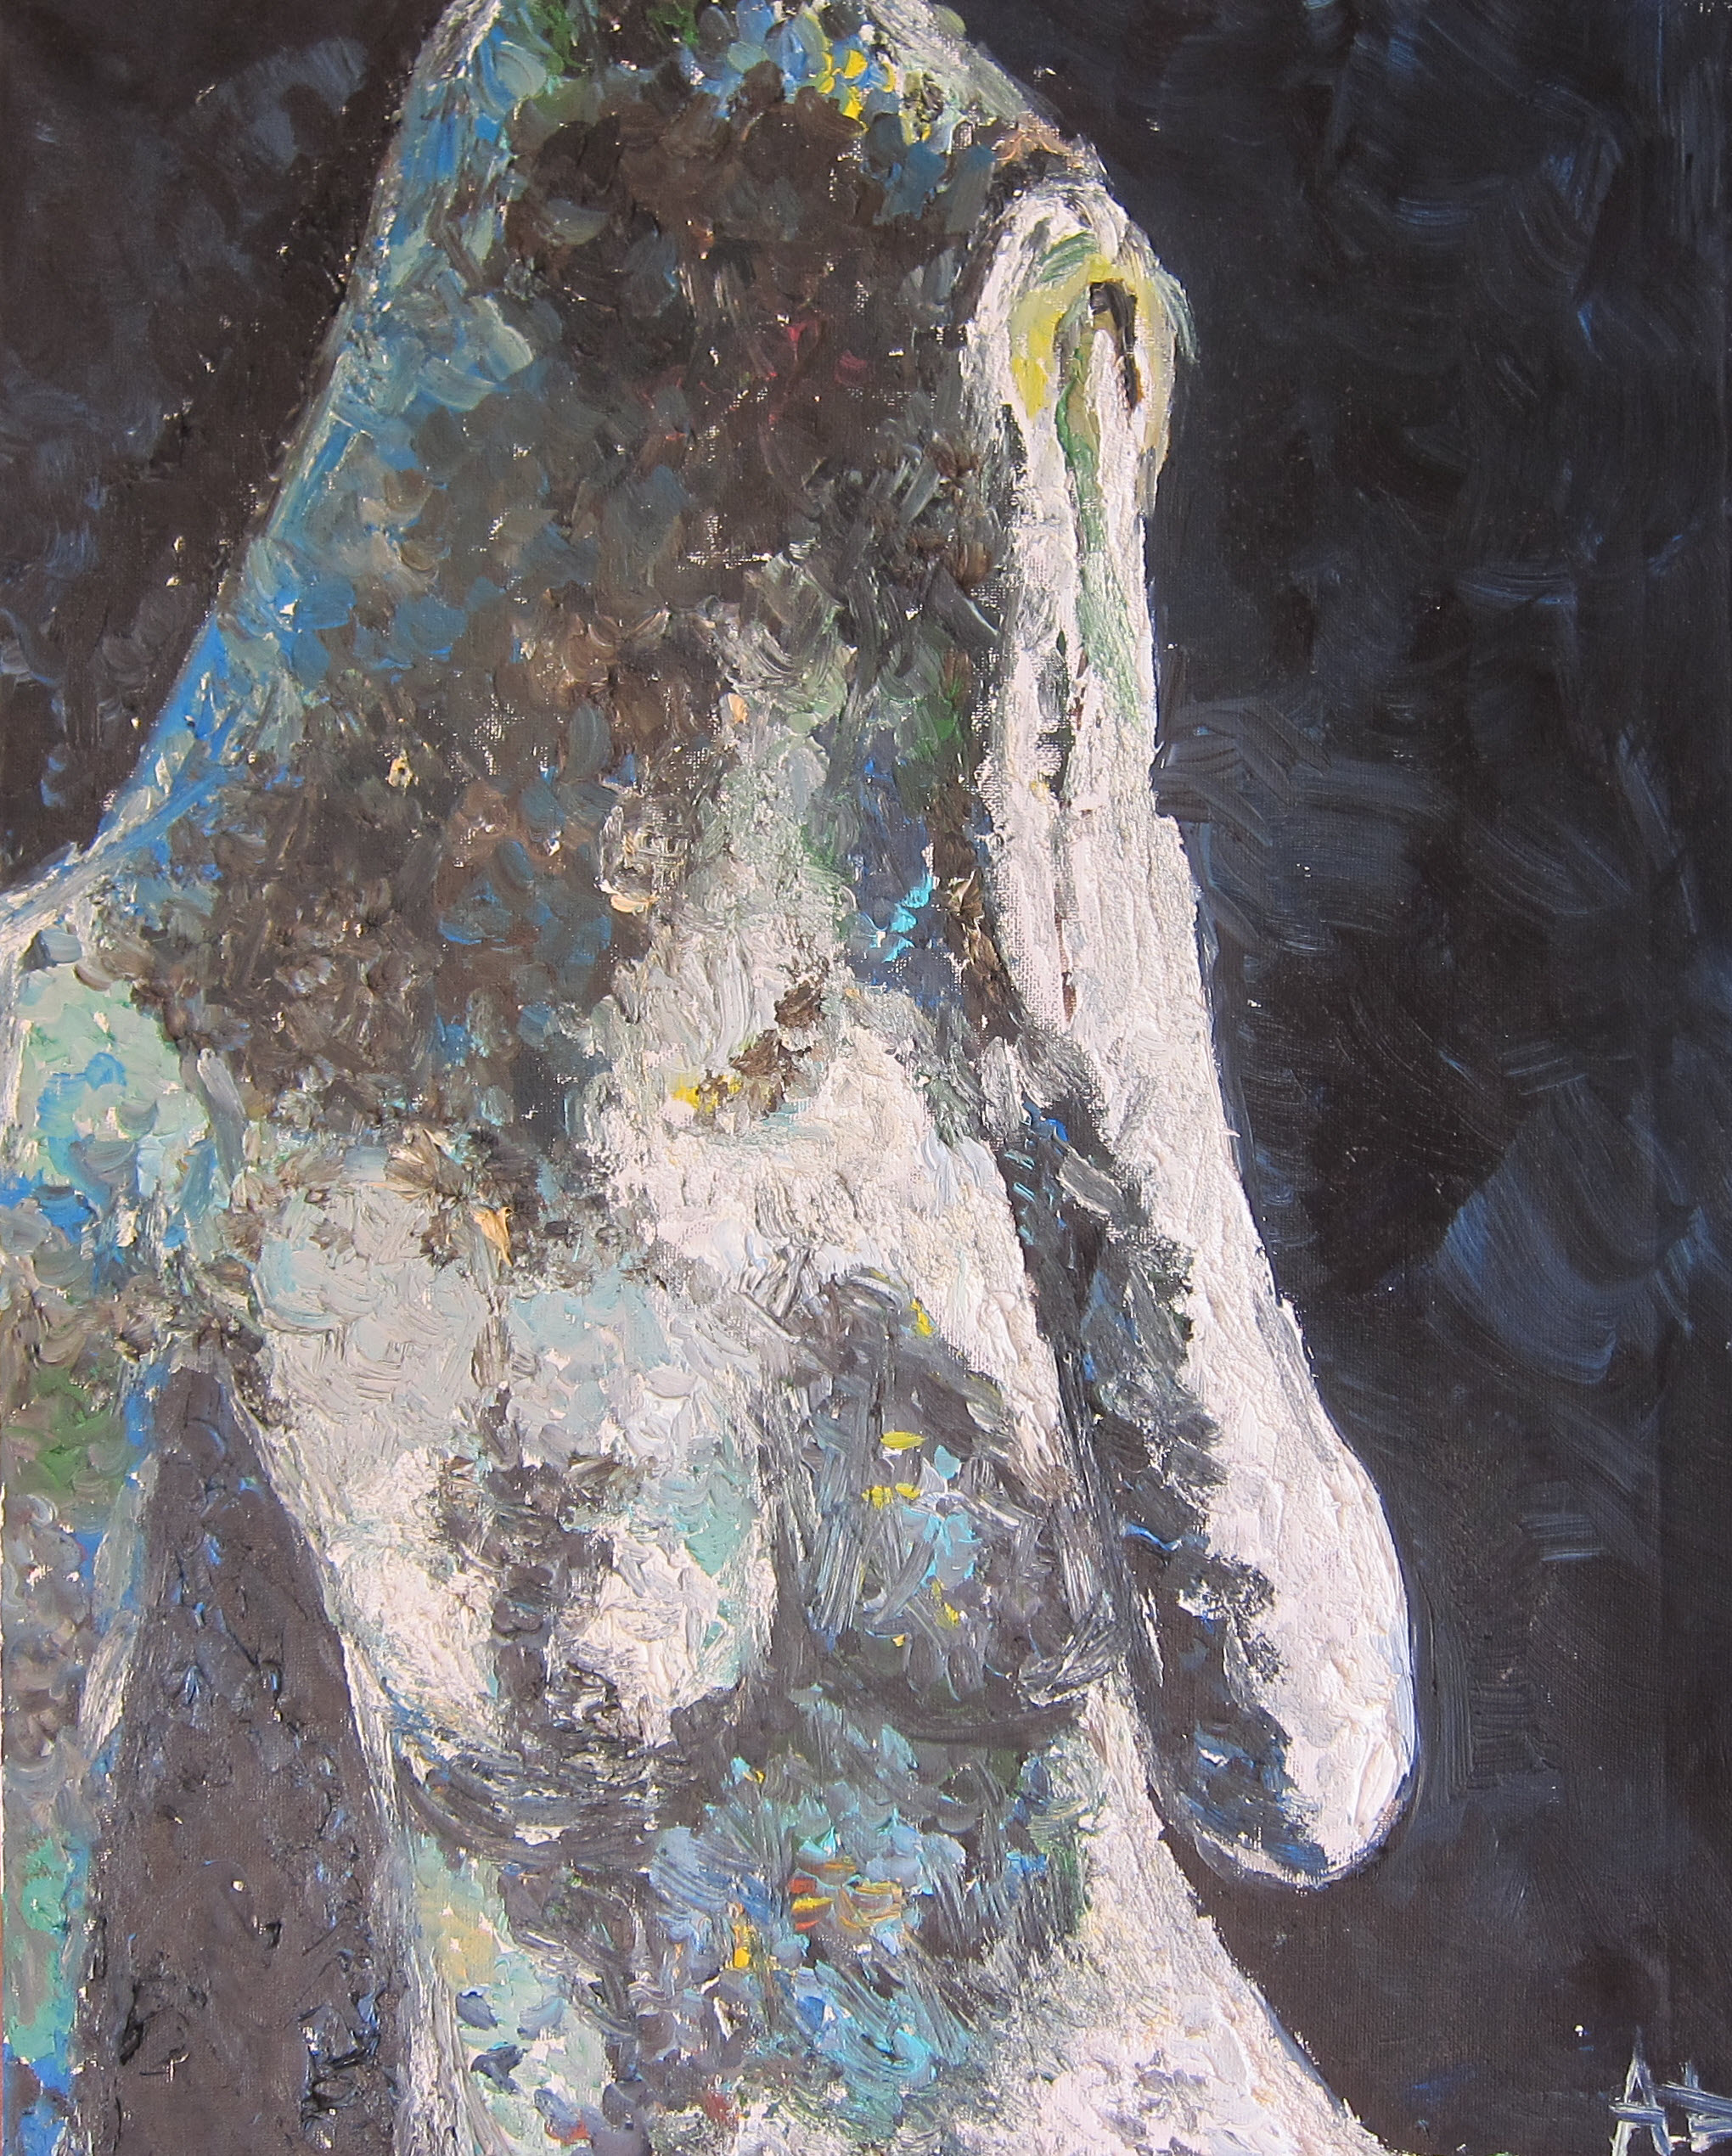 Sirena. 2015. Aleksander Lefbard, oil on canvas. Pivate collection